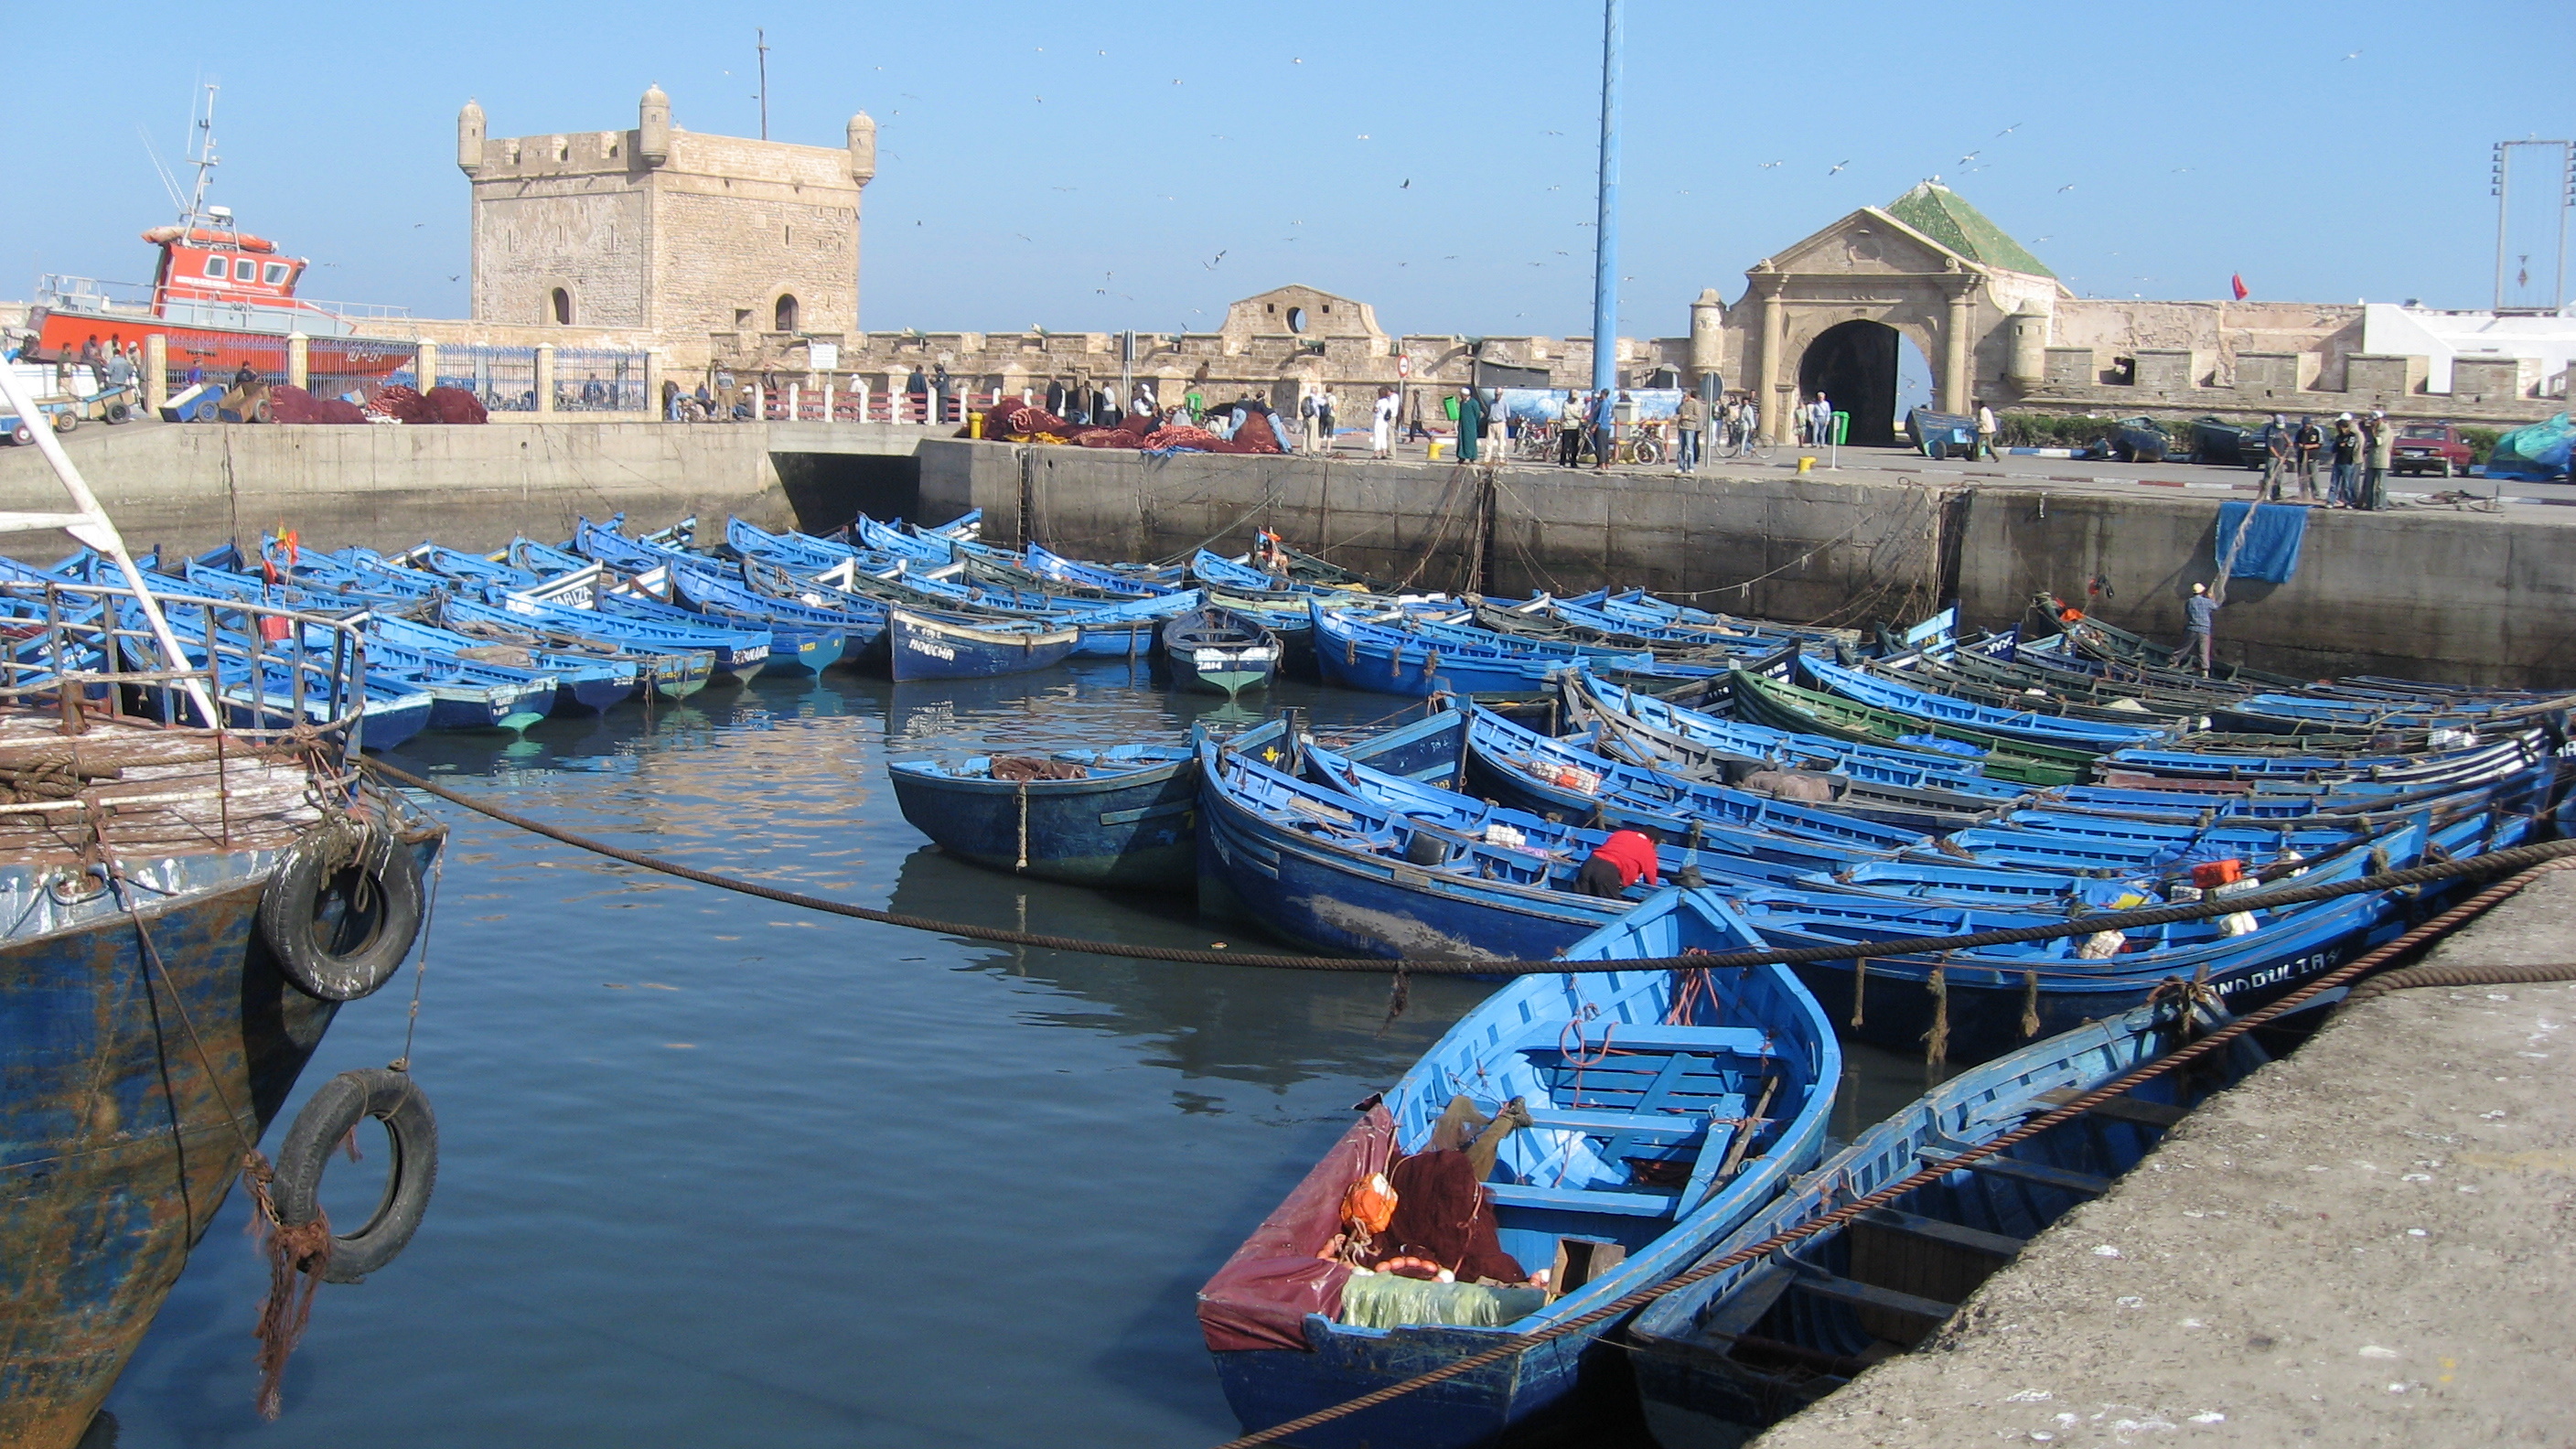 
Марокко - лидер Африки и арабского мира по вылову рыбы и морепродуктов